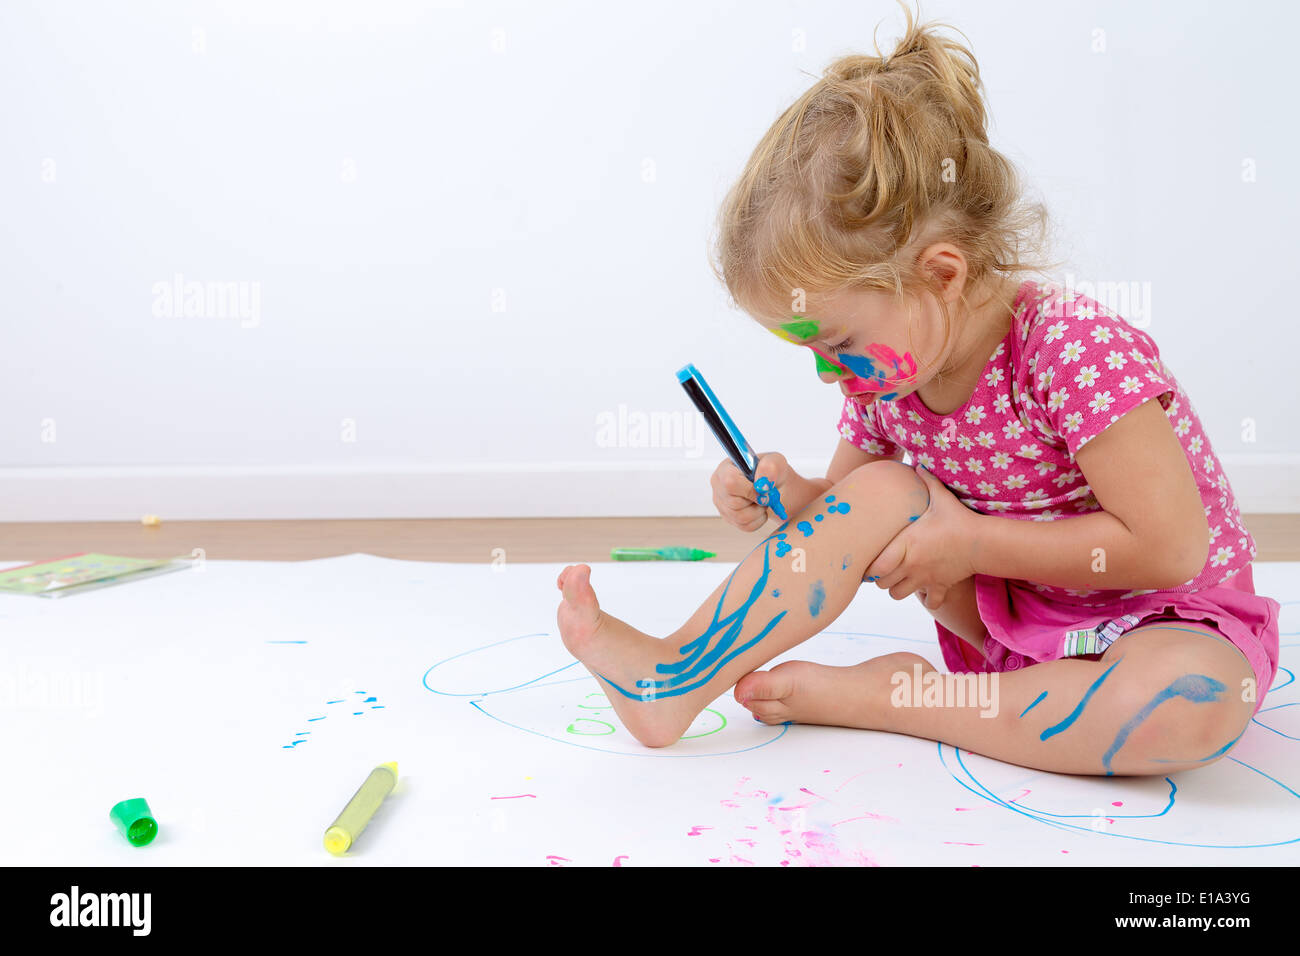 Niedlichen Kleinkind konzentriert ihre Beine vorsichtig mit bunten Stiften malen, nachdem sie ihr Gesicht gemalt Stockfoto